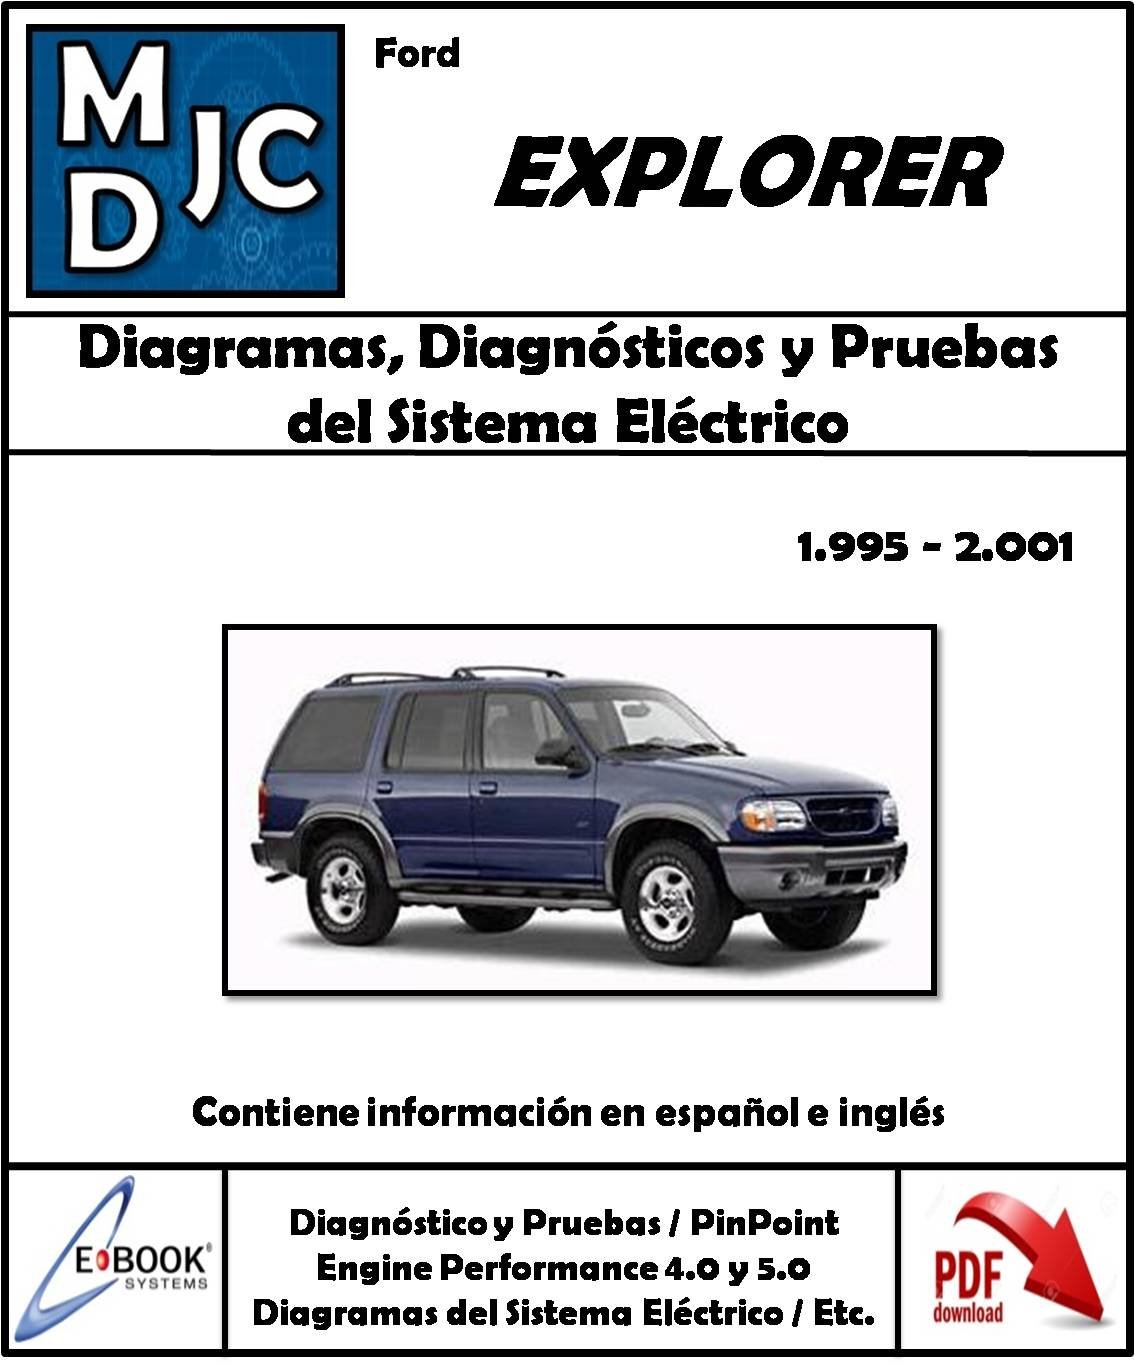 Ford Explorer 1995 - 2001